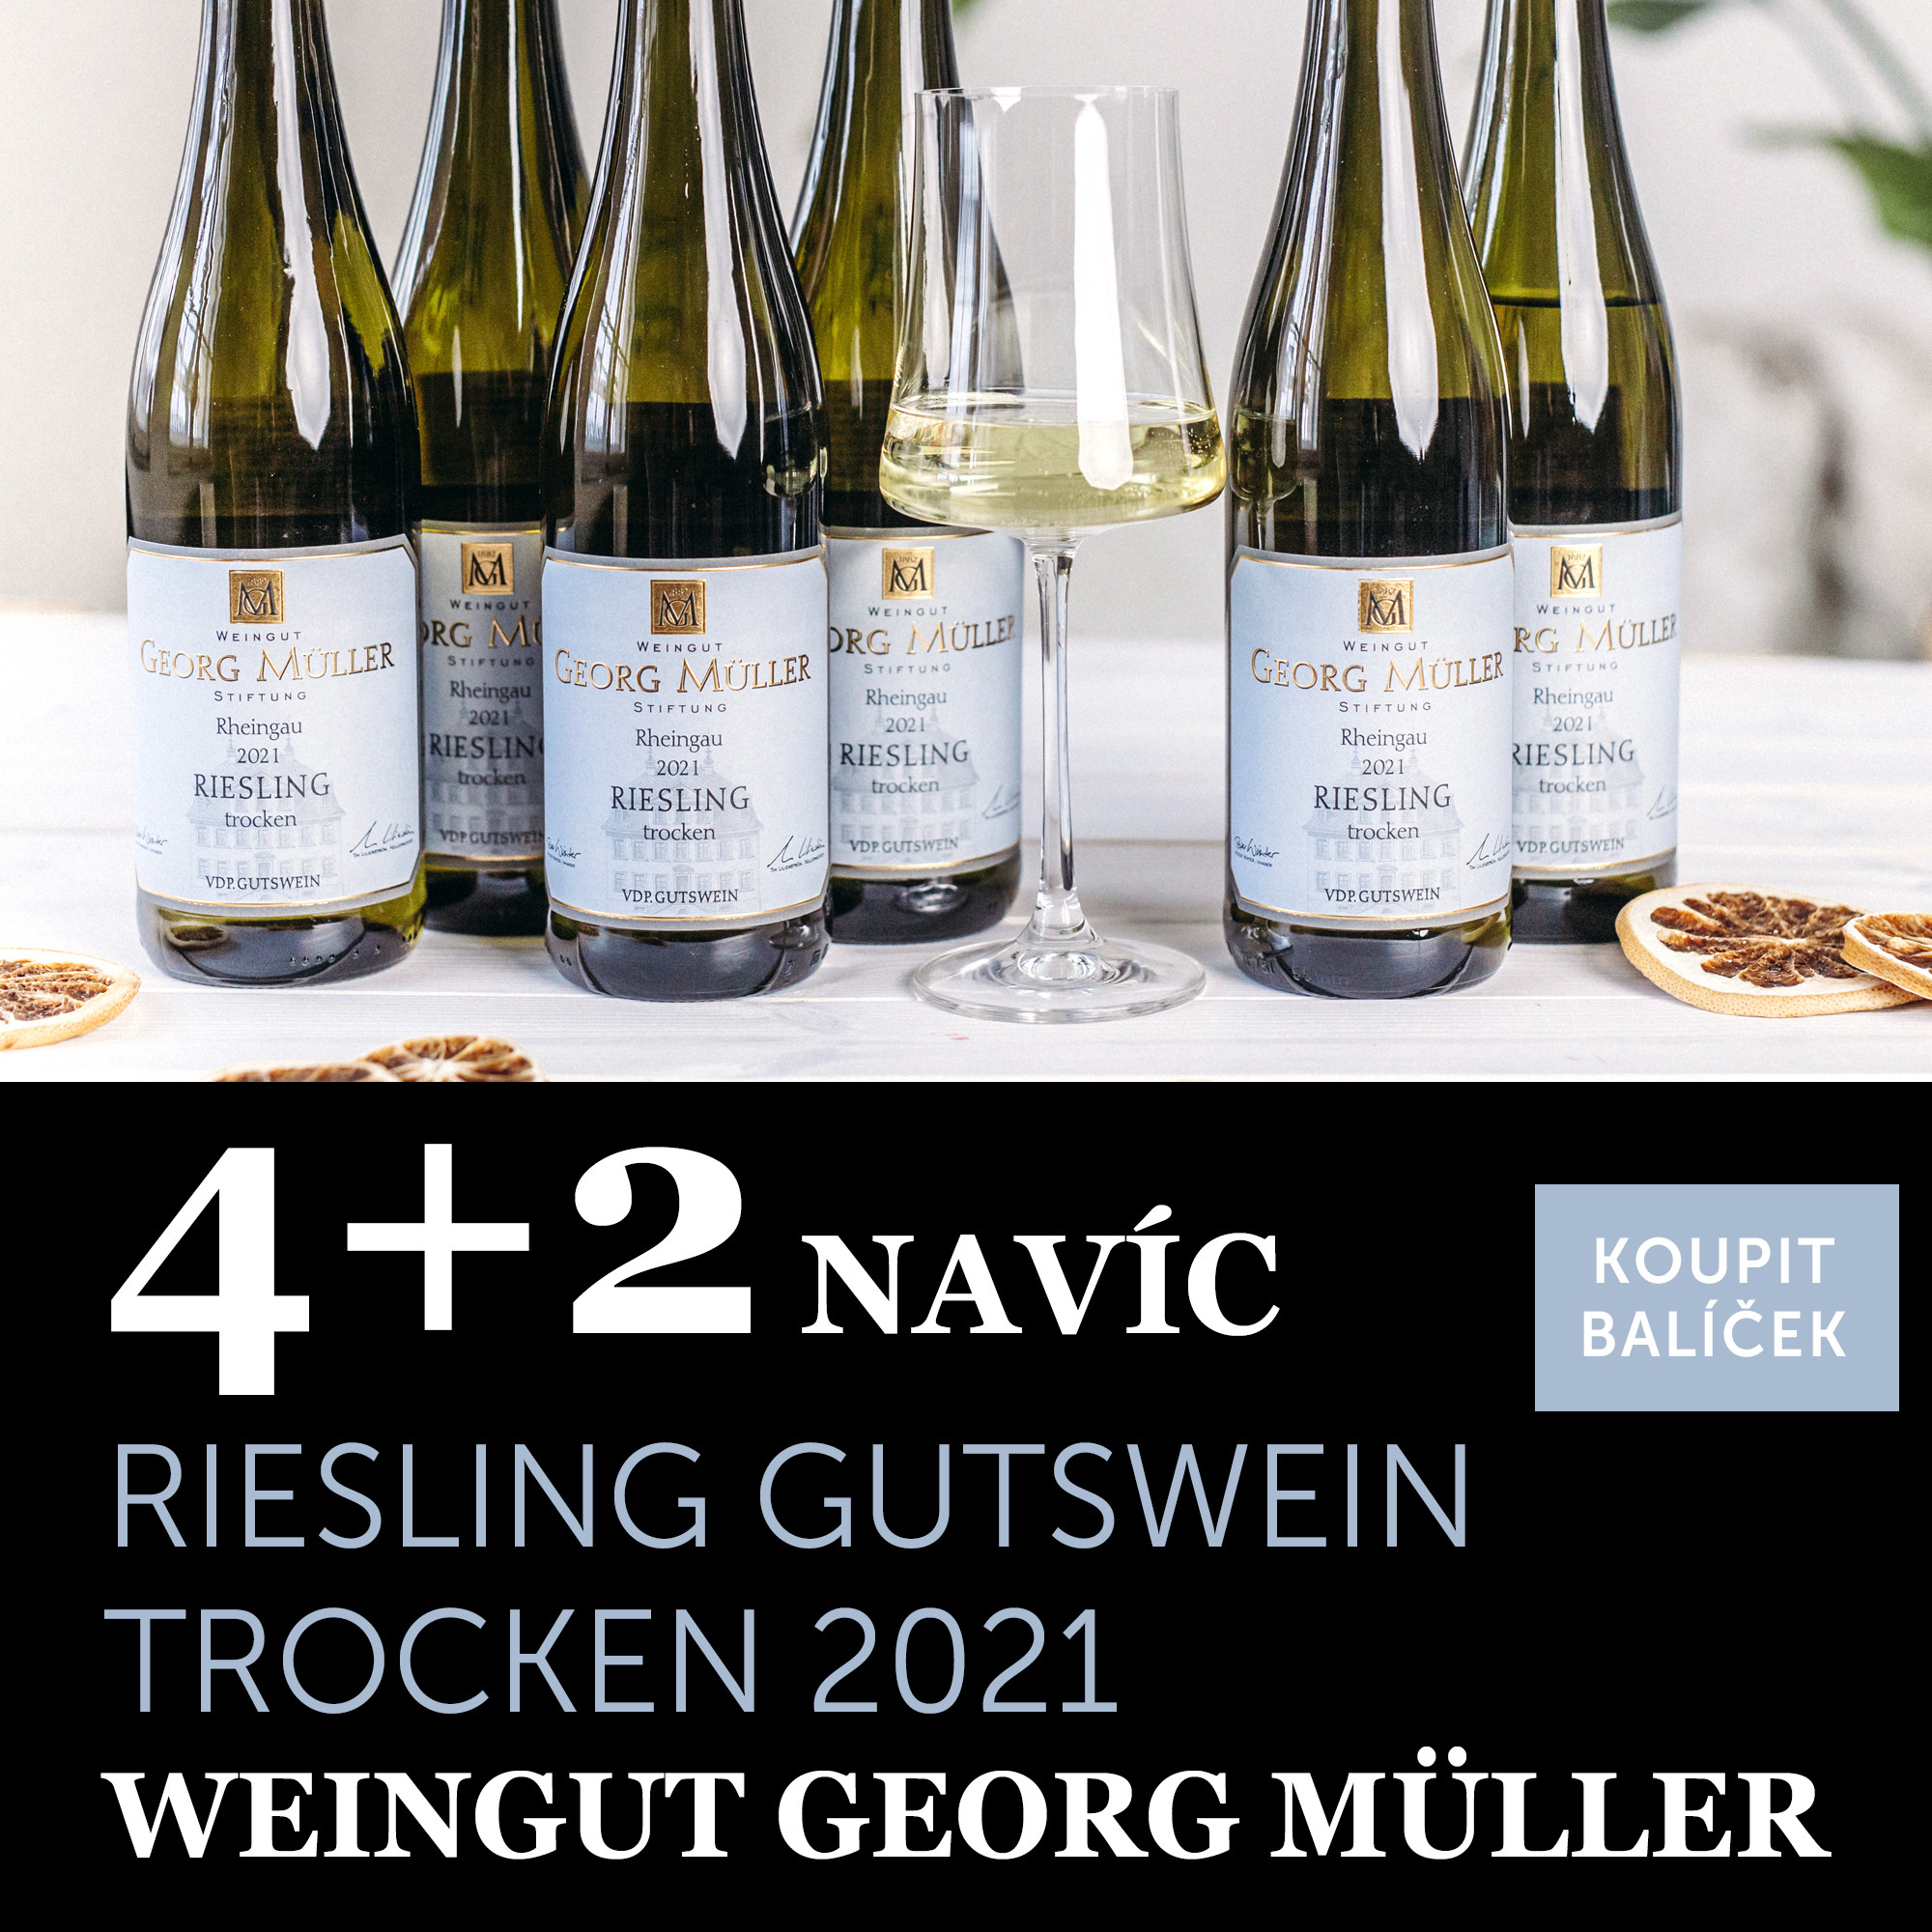 Riesling Gutswein trocken 2021 Georg Müller 4+2 navíc - UKONČENO